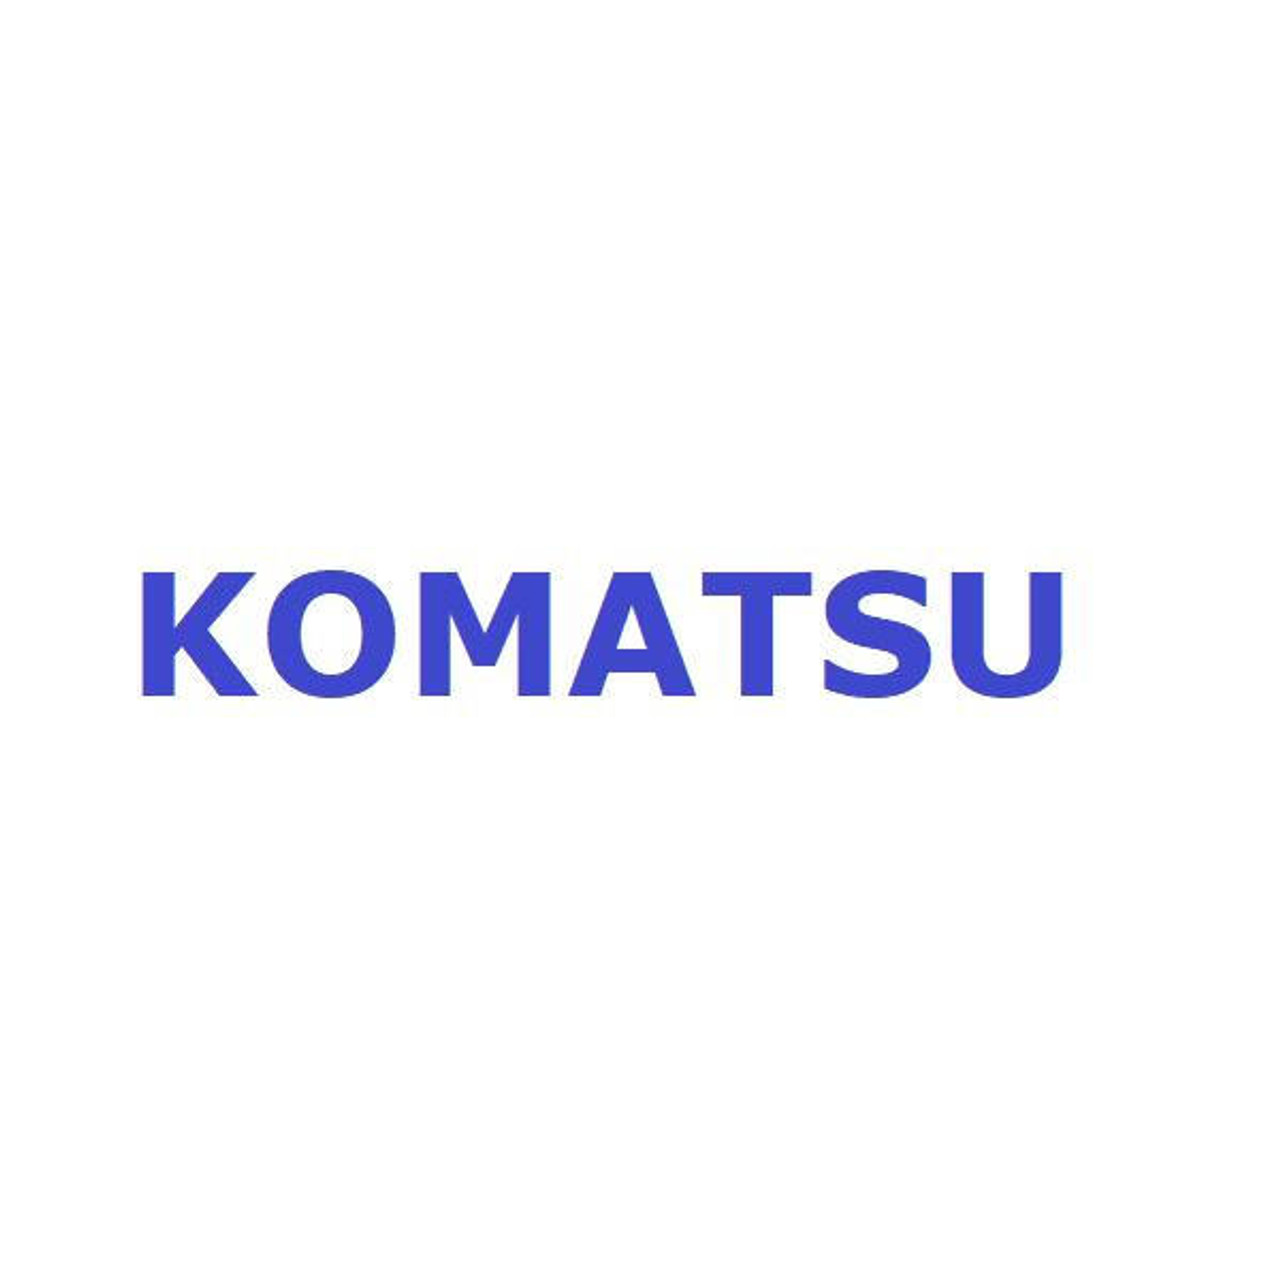 Komatsu Seal # 56D-50-35000K Seal Kit